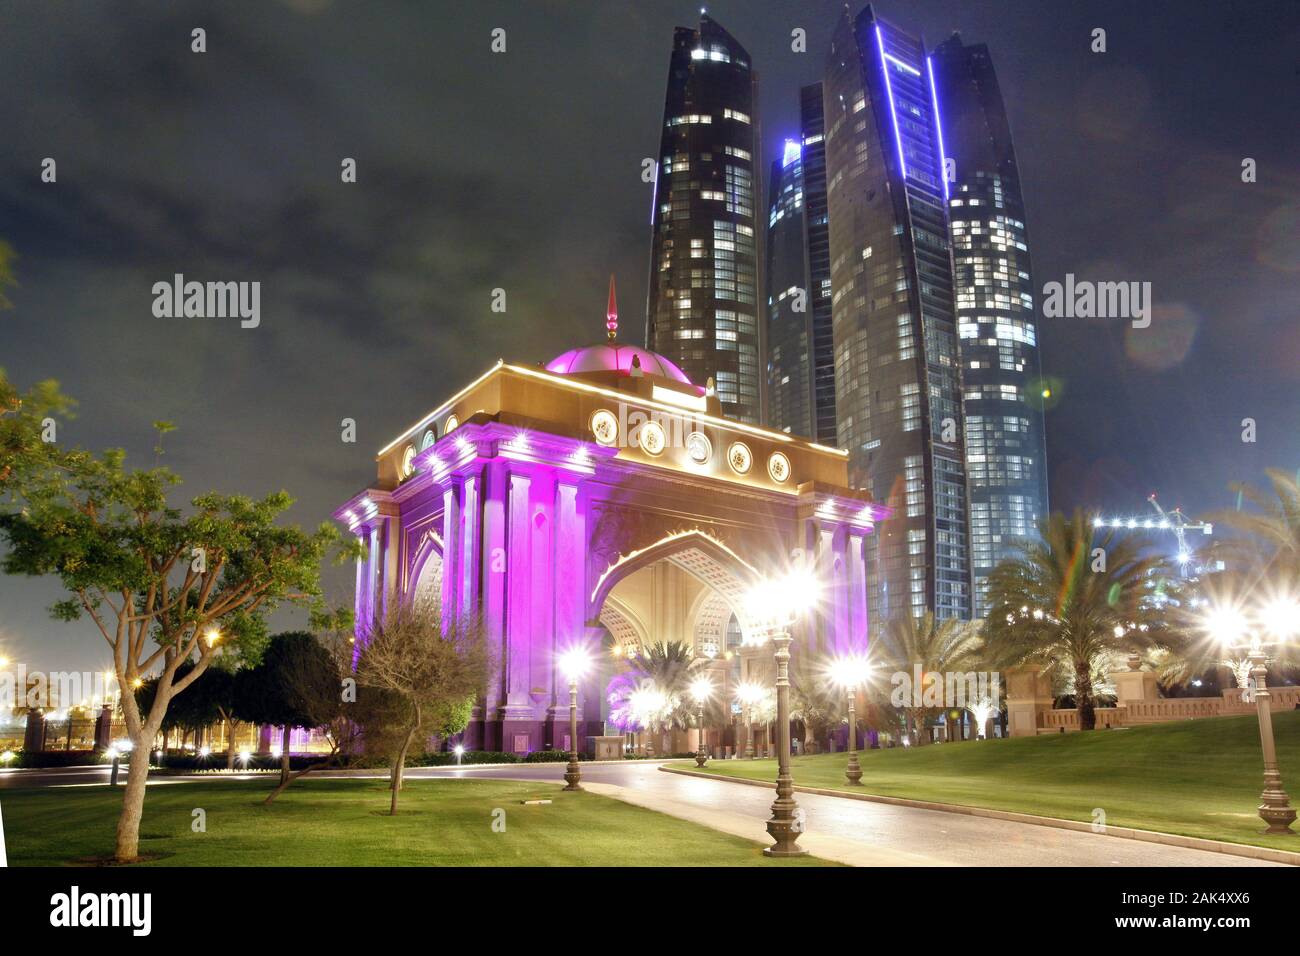 Abu Dhabi: Emirates Palace Hotel, illuminierter Triumph-Bogen an der  Einfahrt zum Hotel, dahinter die Etihad Towers, Dubai | usage worldwide  Stock Photo - Alamy